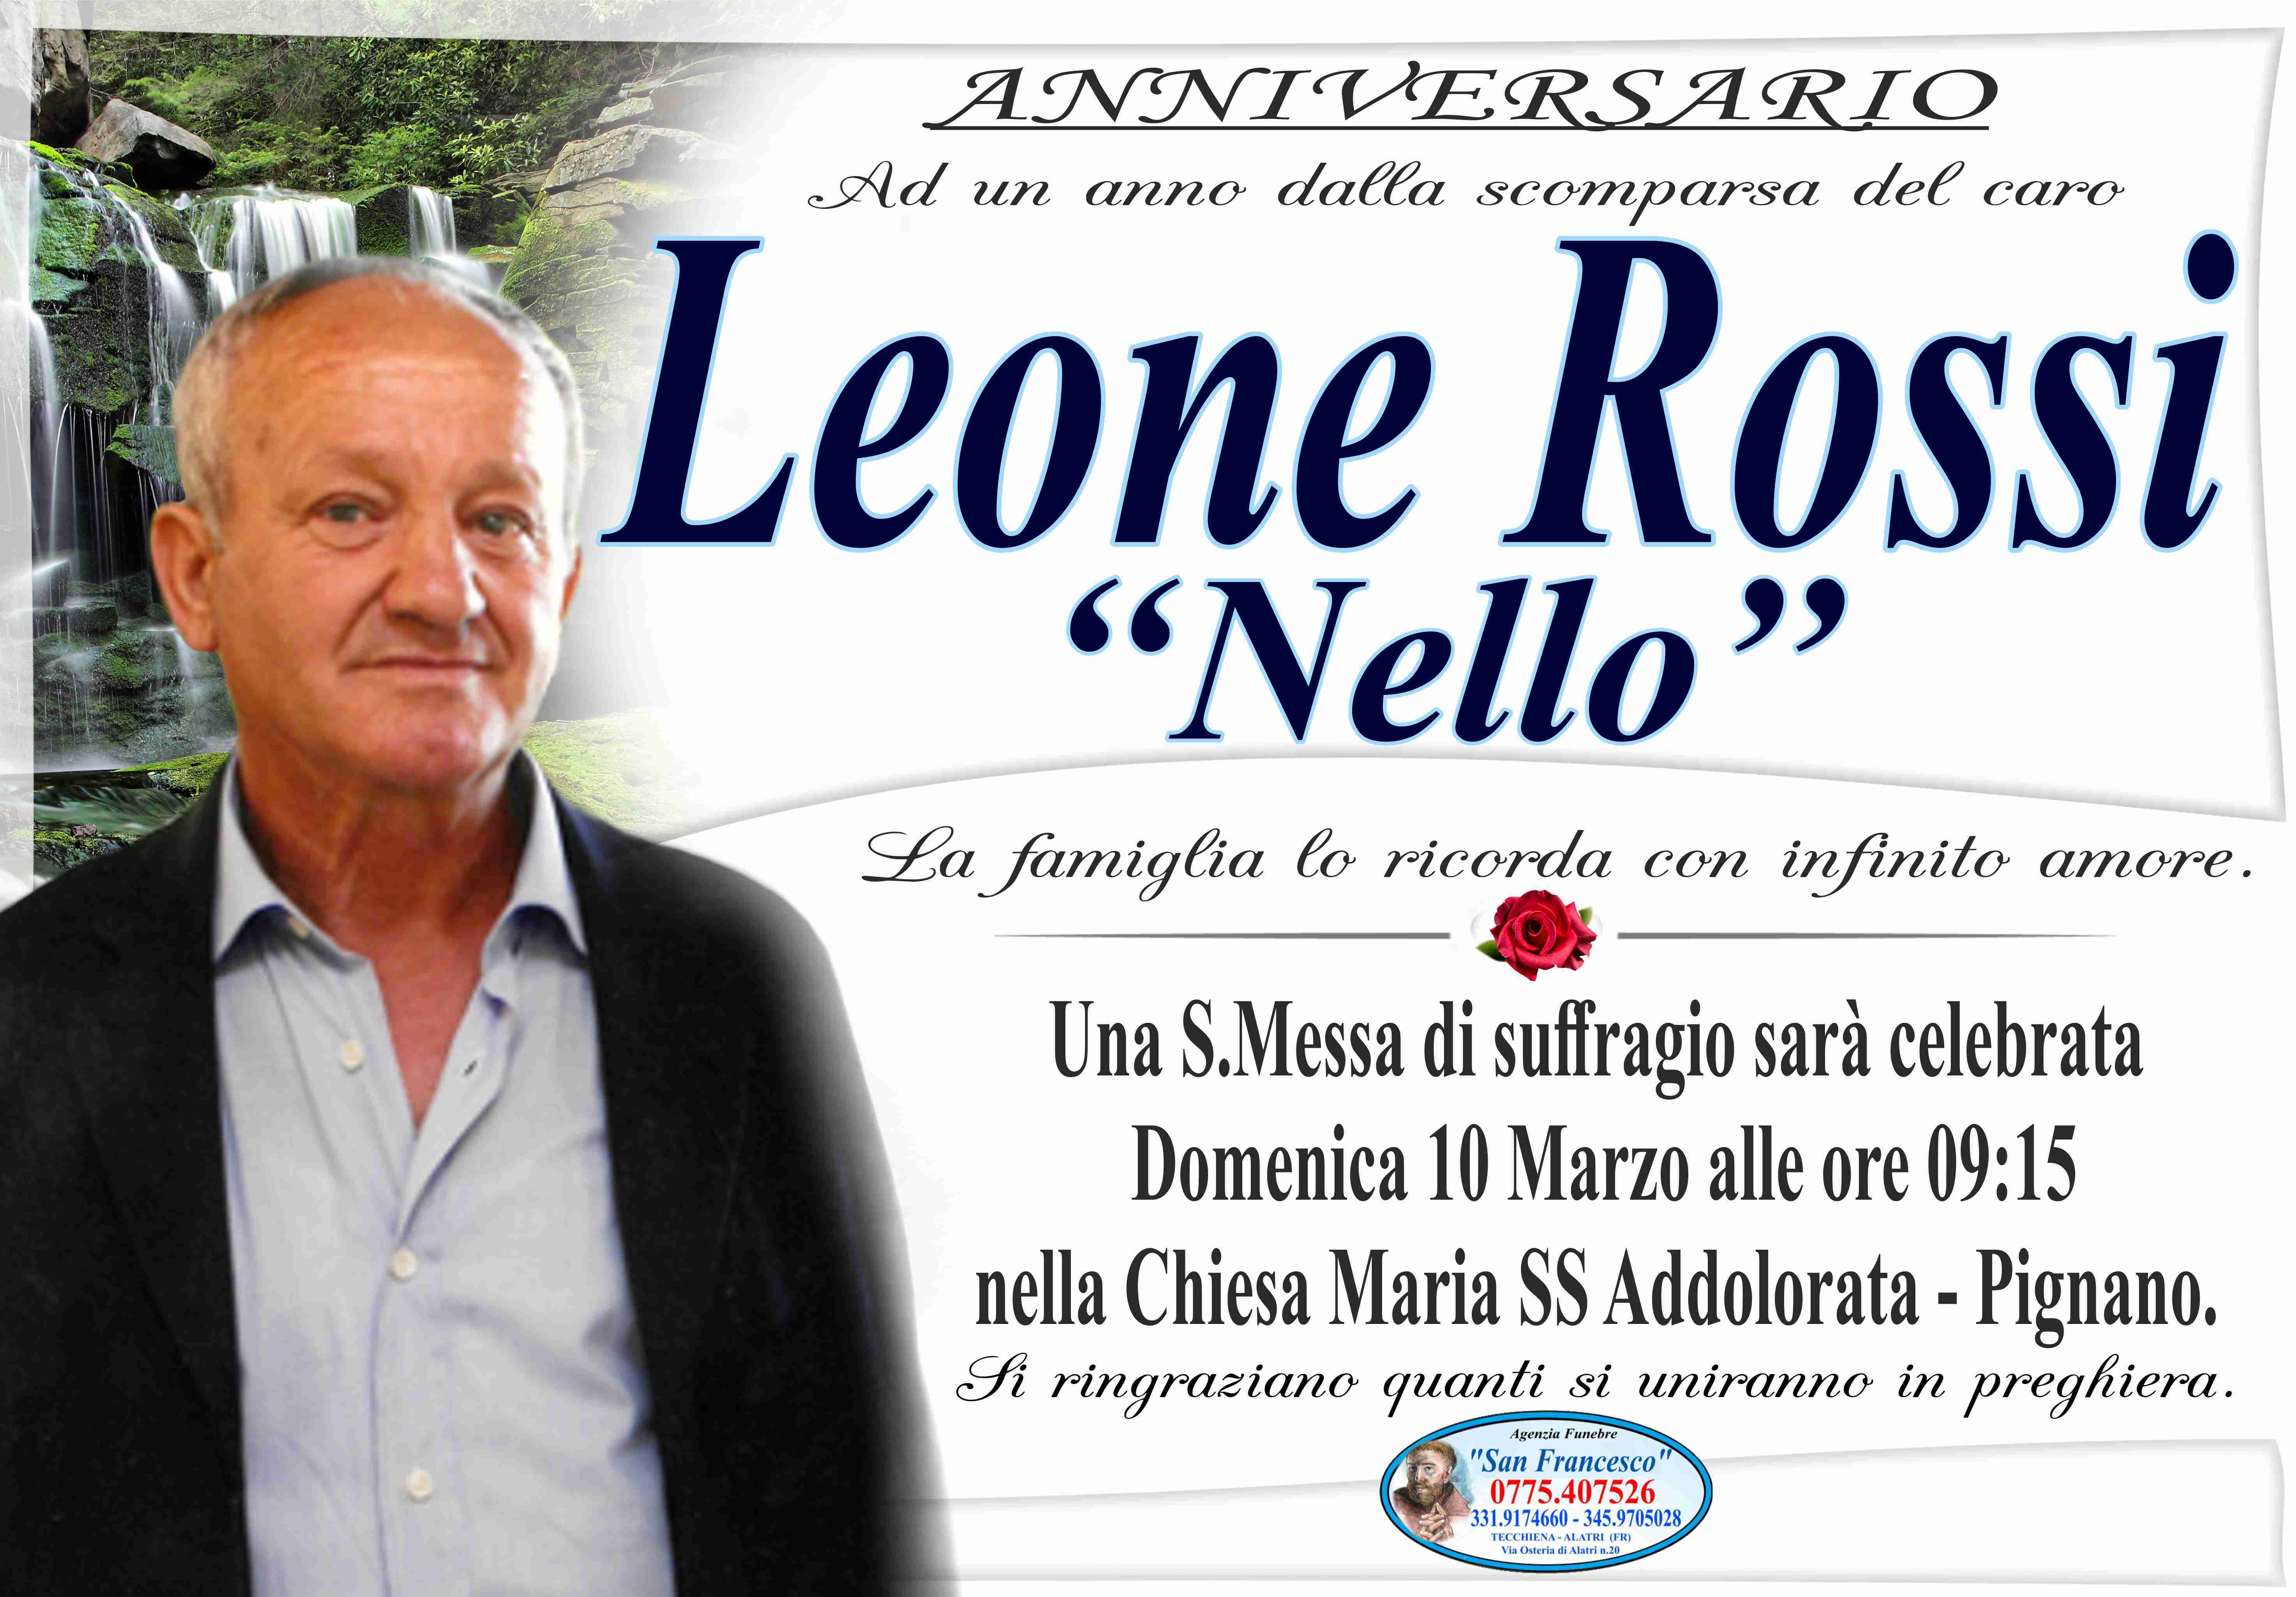 Leone Rossi "Nello"